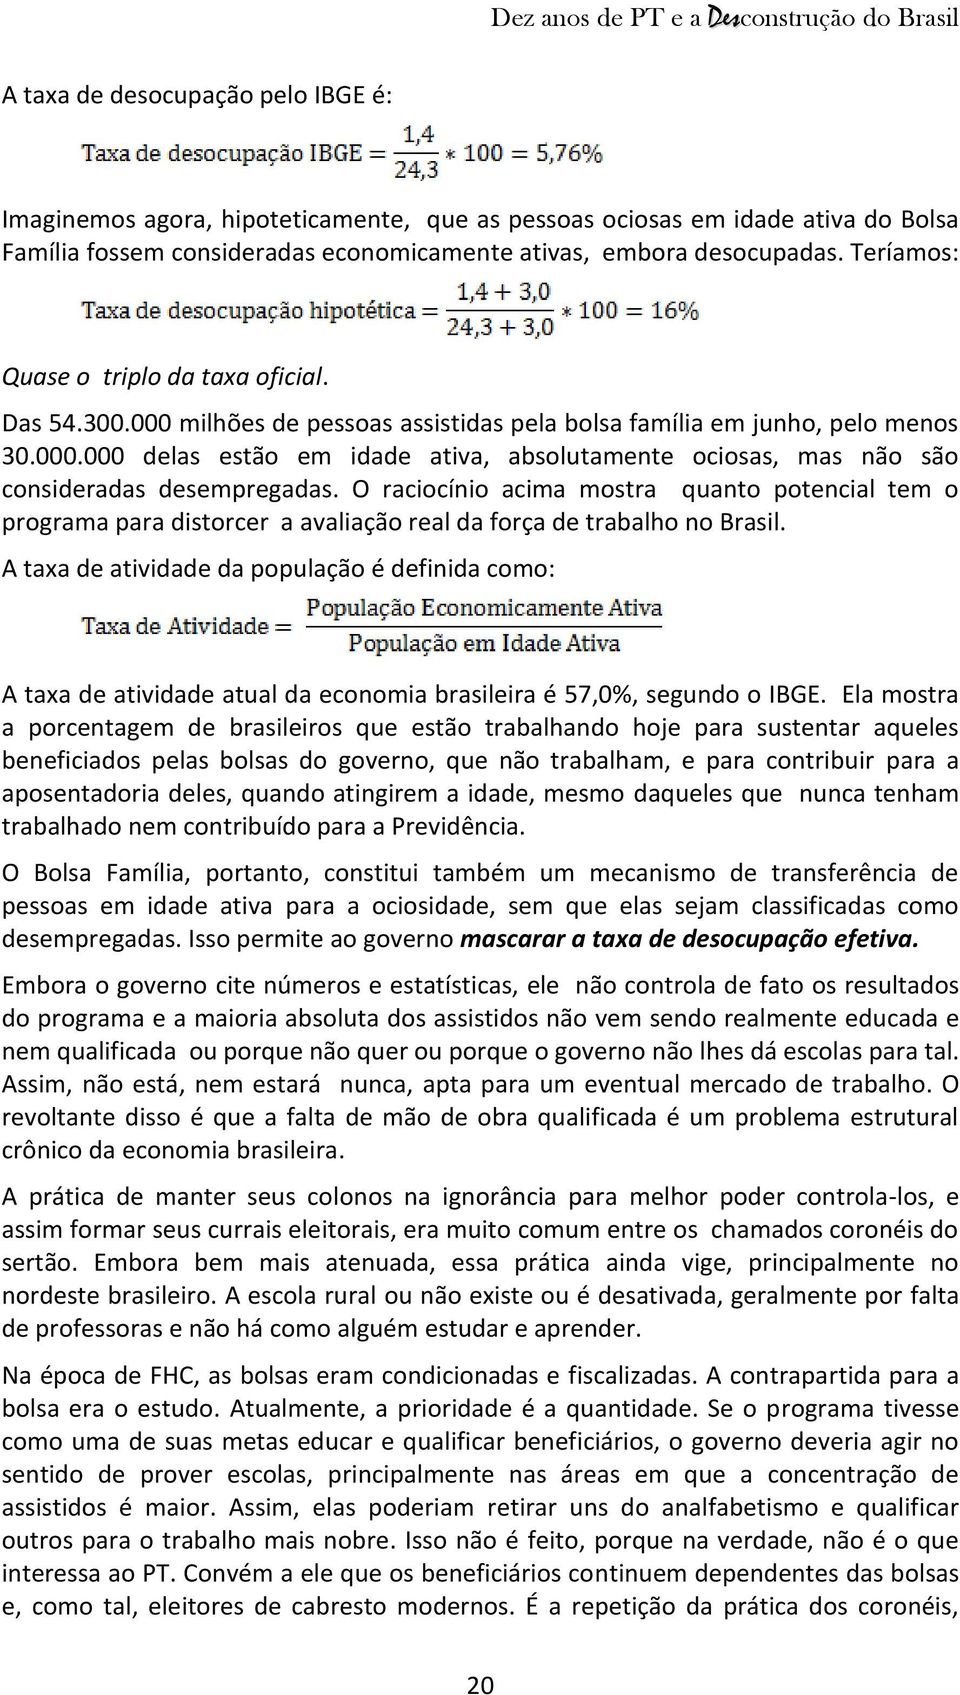 O raciocínio acima mostra quanto potencial tem o programa para distorcer a avaliação real da força de trabalho no Brasil.